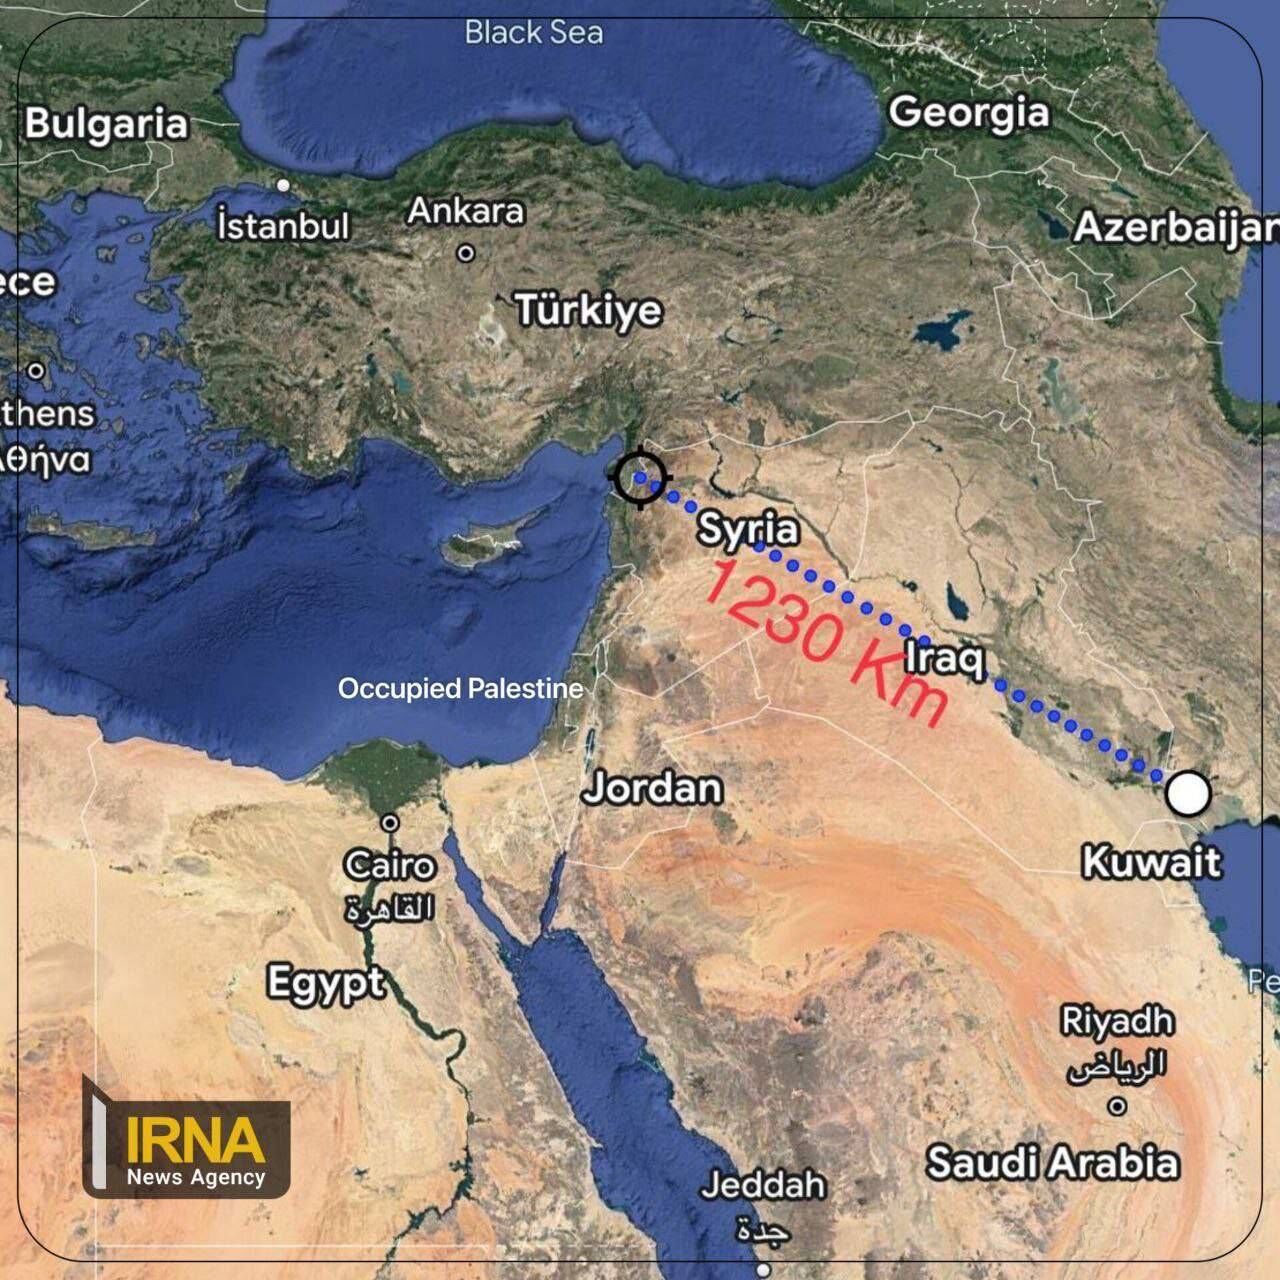 伊朗射程最远的导弹行动；从 1200 公里之外的距离瞄准恐怖分子中心